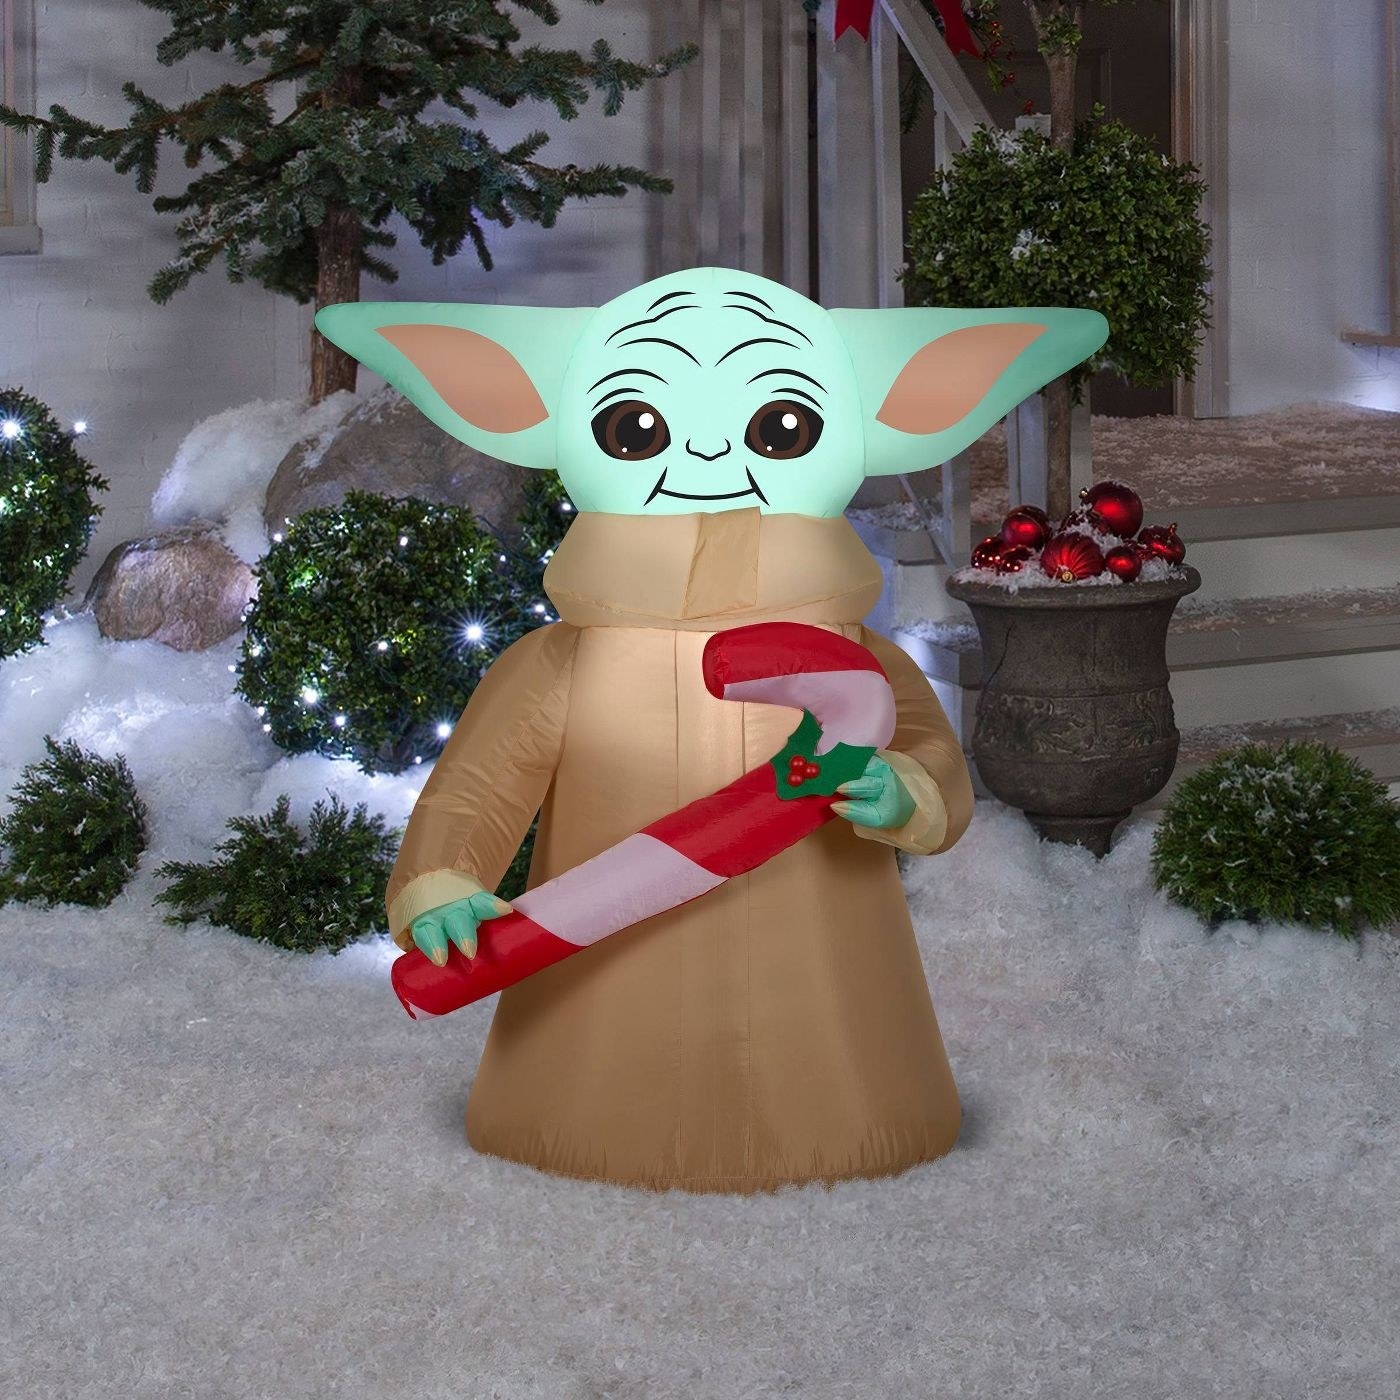 Baby Yoda lawn decoration